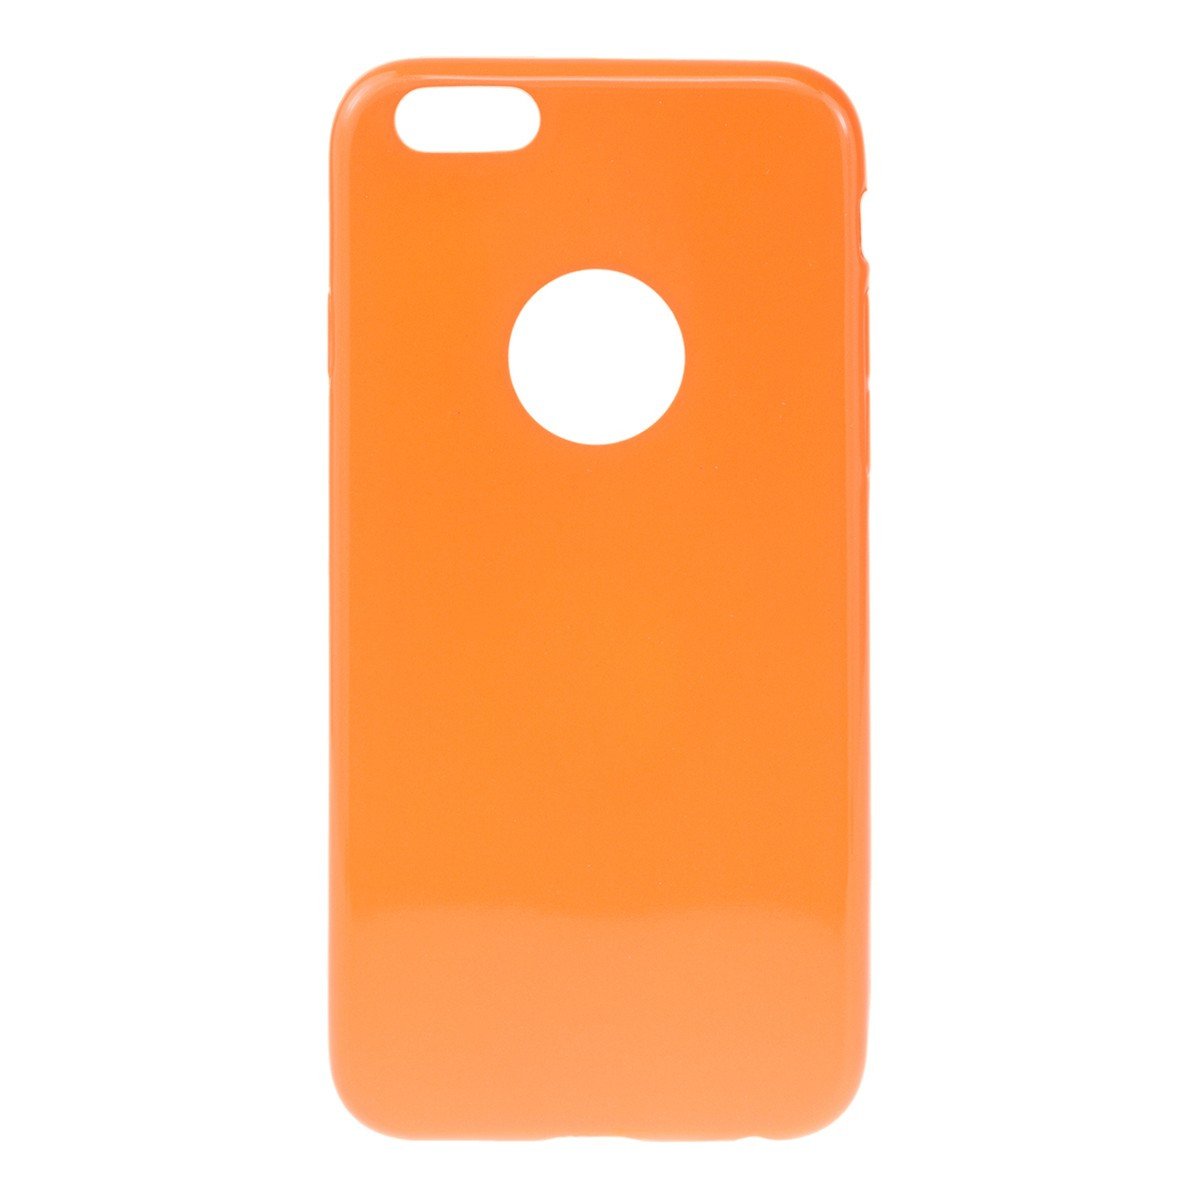 Θηκη TPU Jelly UV - iPhone 6/6s - Πορτοκαλι - iThinksmart.gr